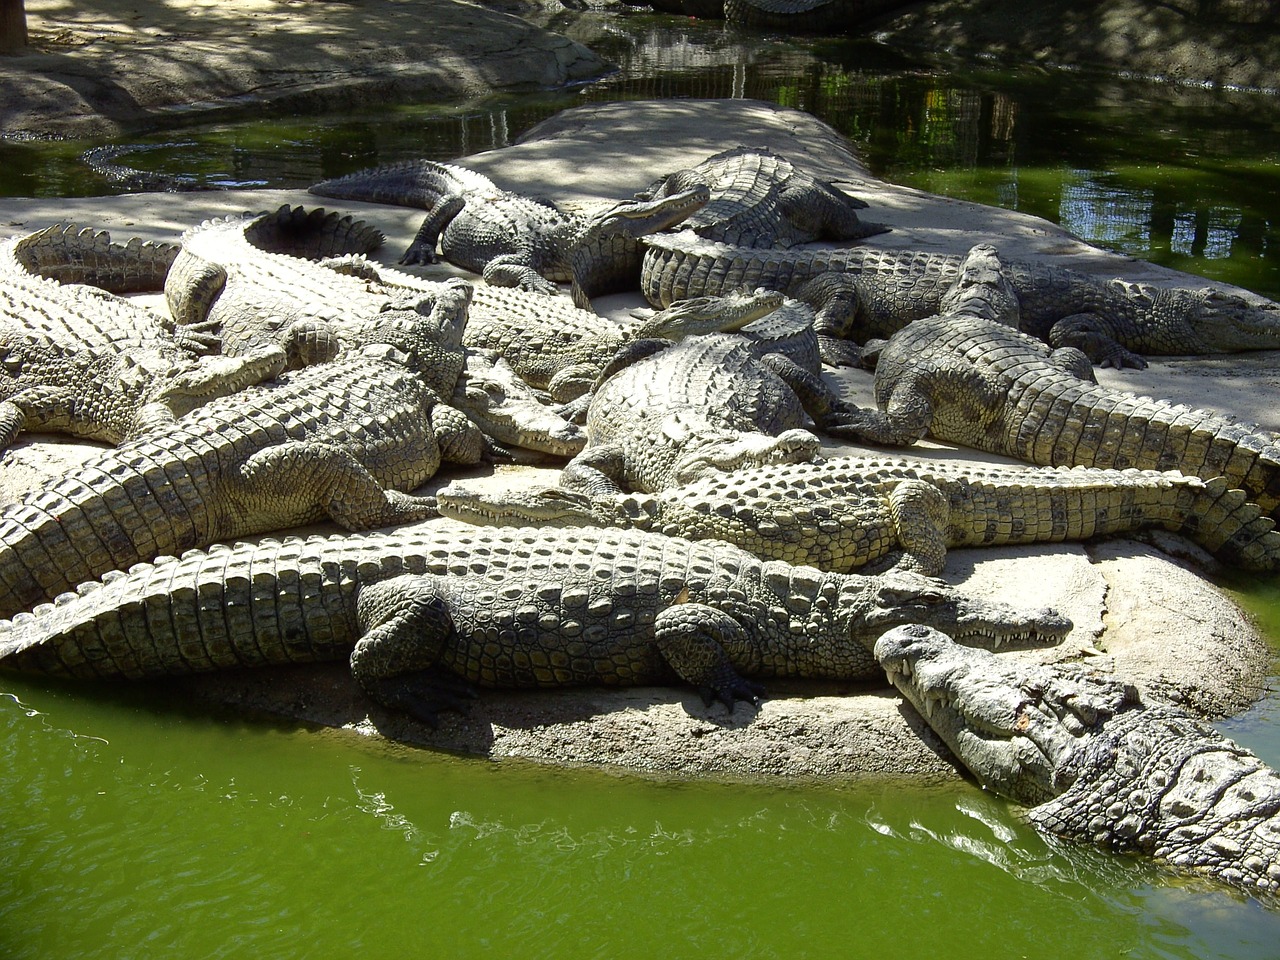 crocodiles nature reptile free photo